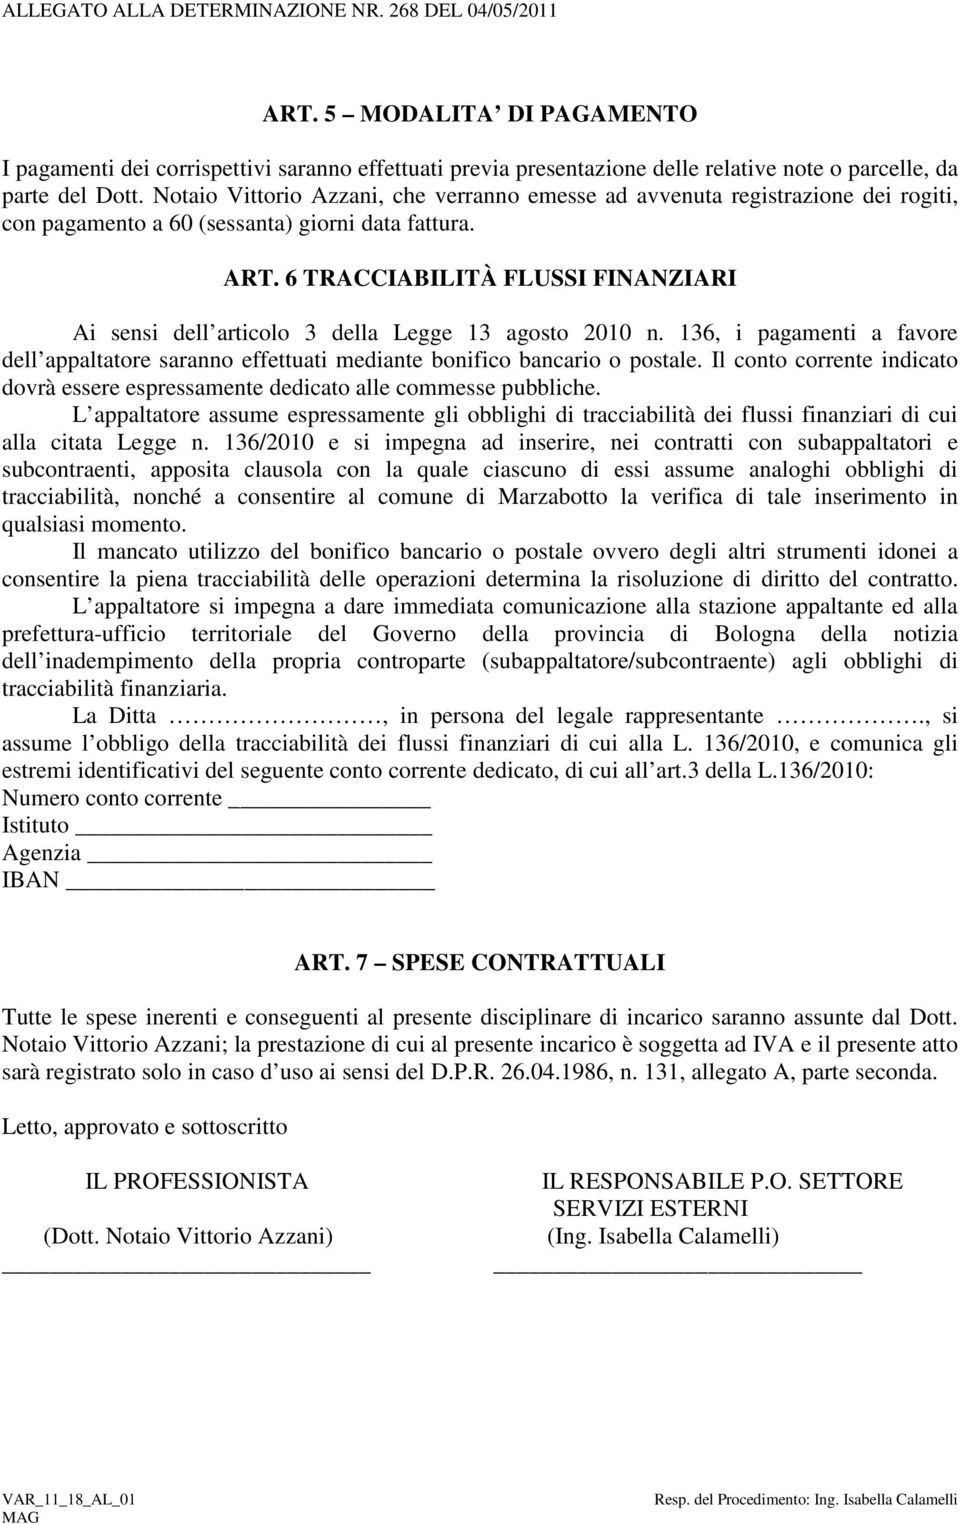 Notaio Vittorio Azzani, che verranno emesse ad avvenuta registrazione dei rogiti, con pagamento a 60 (sessanta) giorni data fattura. ART.